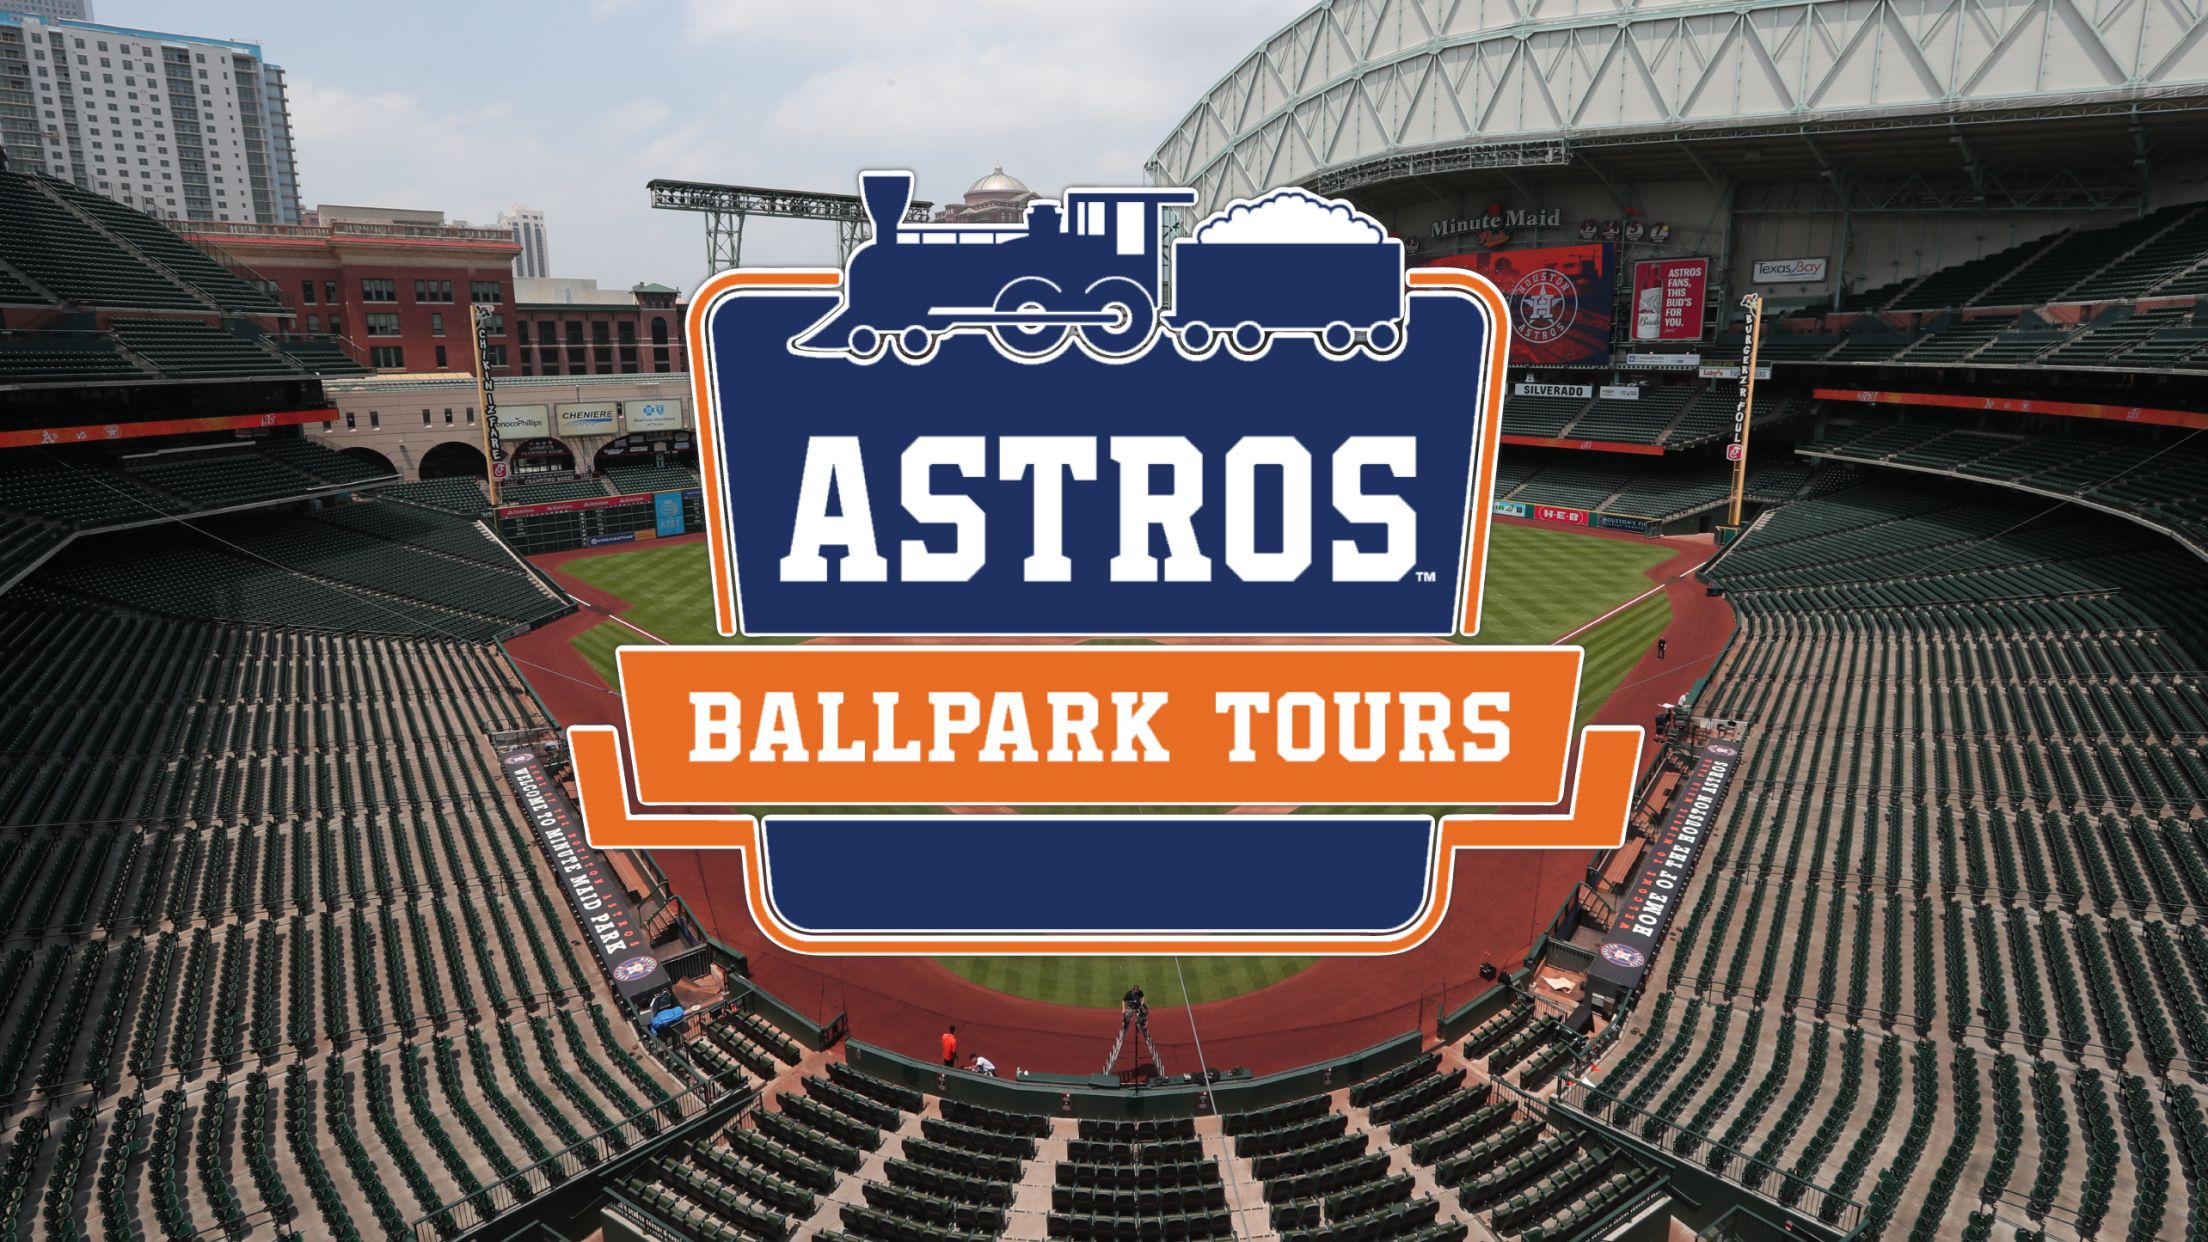 Astros Ballpark Tours Index